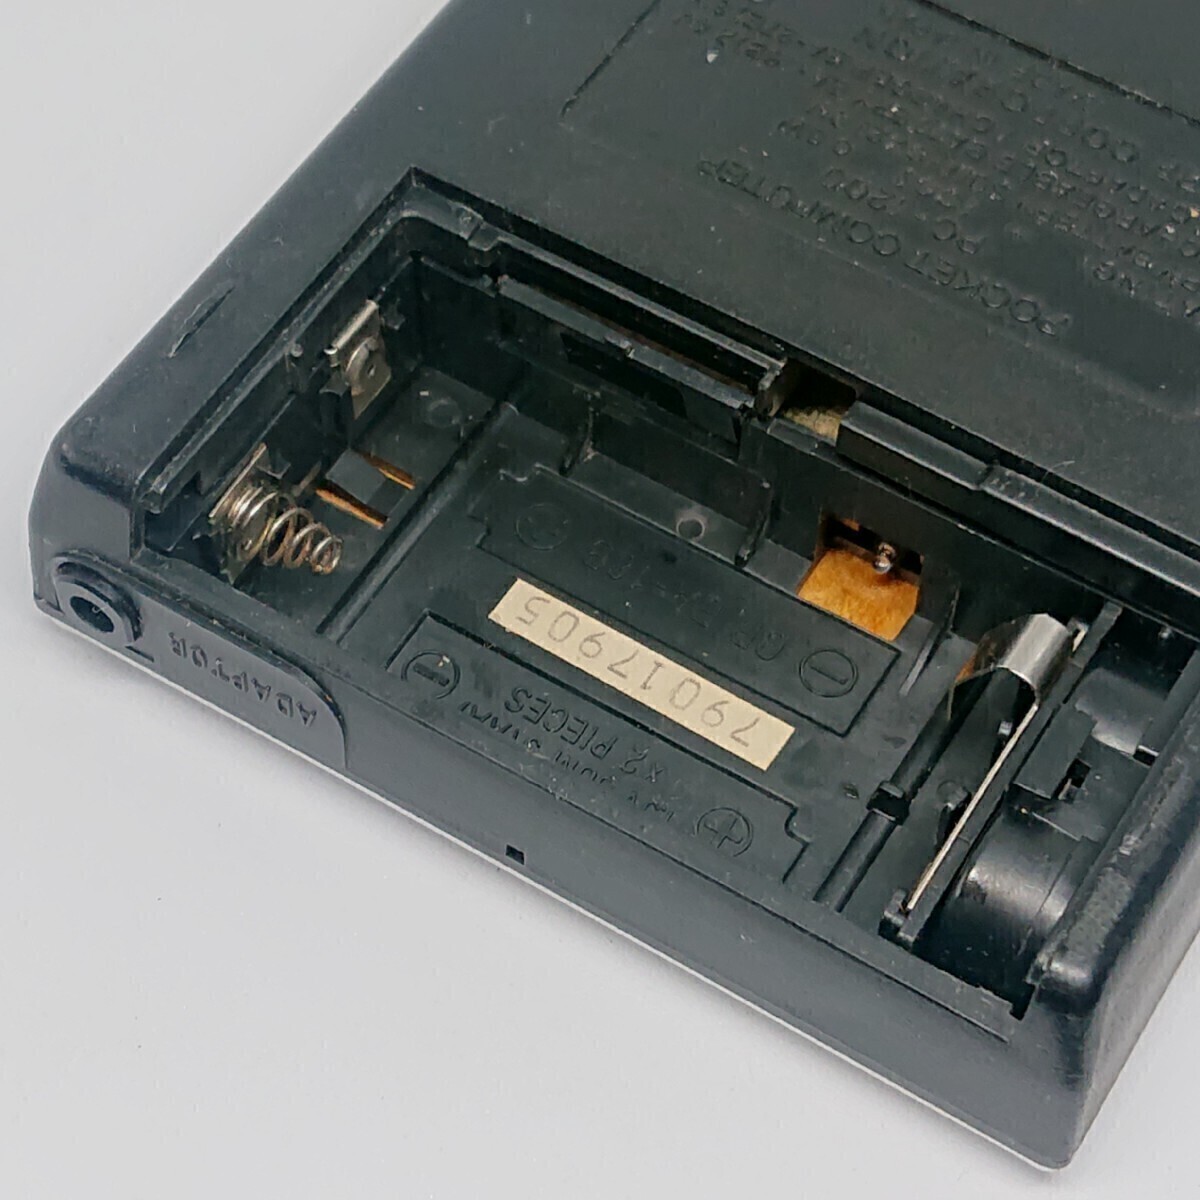 シャープ ピタゴラス 初代ポケットコンピューターSHARP PC-1200 1977年発売 プログラム電卓 関数電卓 _画像6